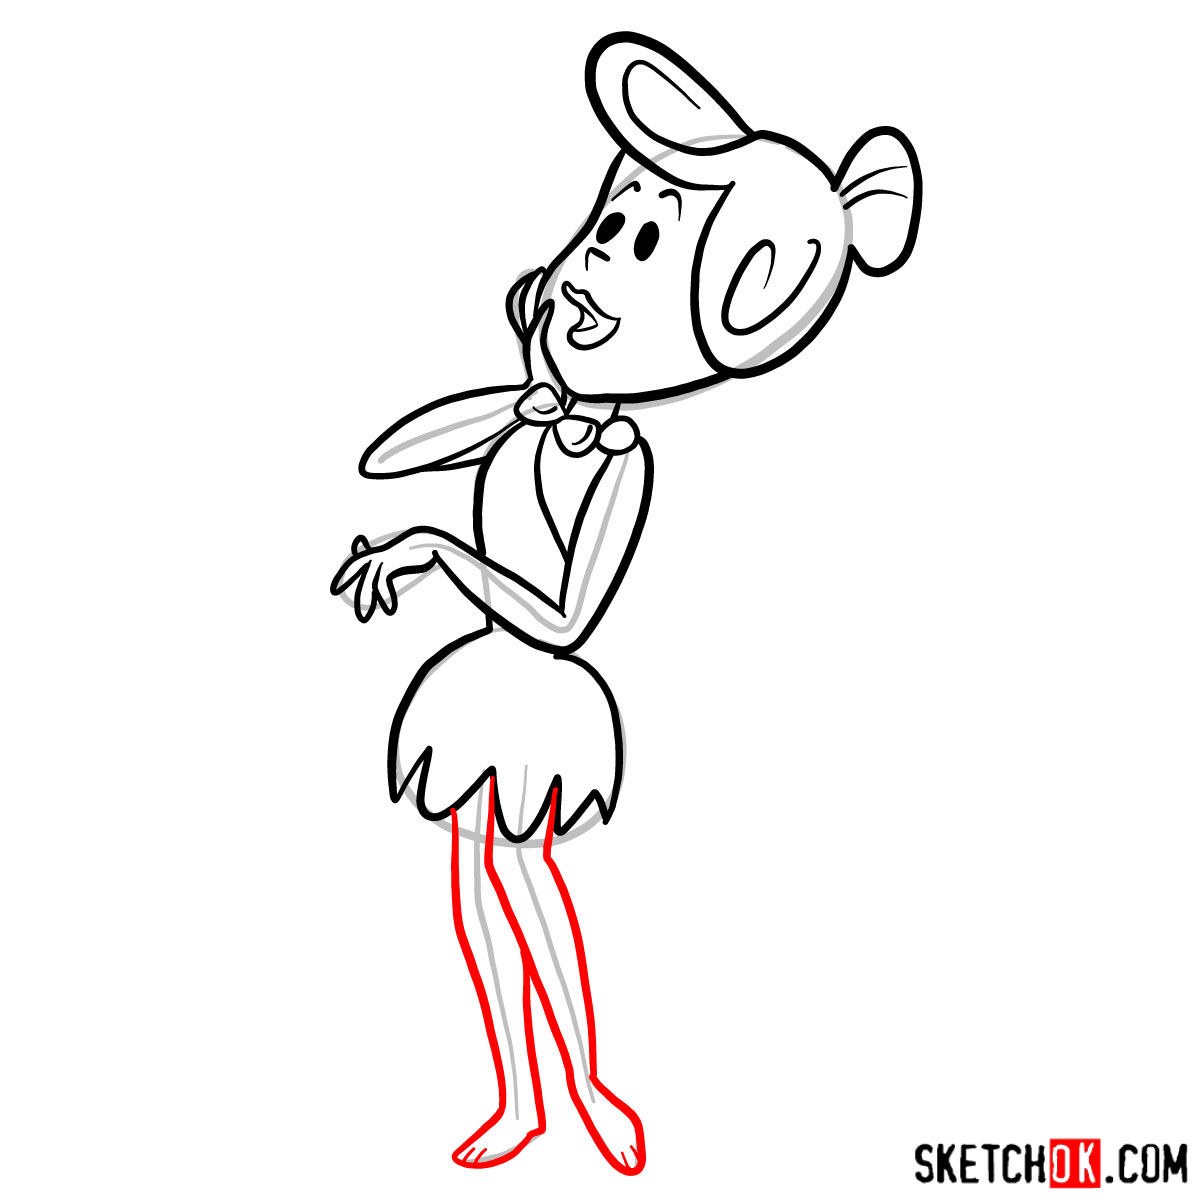 How to draw Wilma Flintstone - step 10